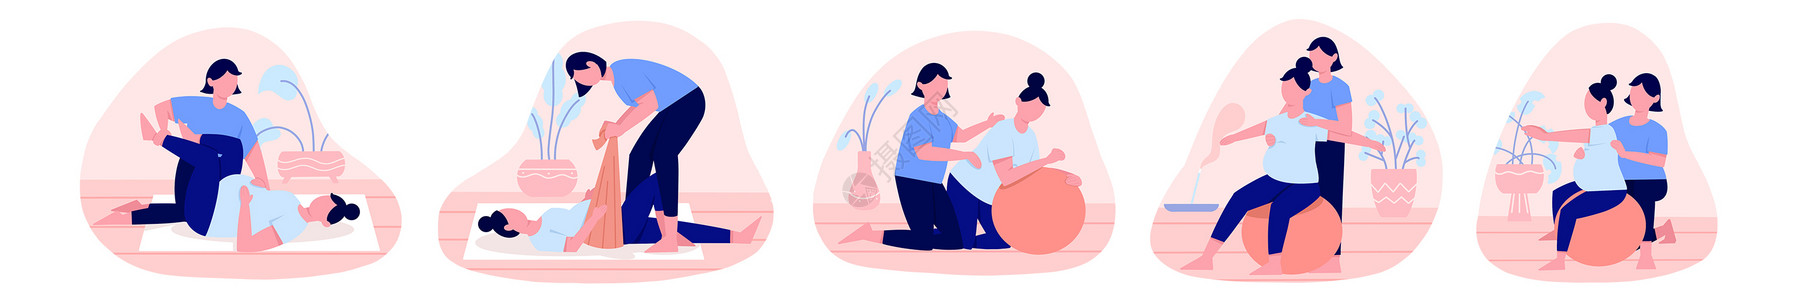 护理元素粉蓝色扁平孕妇产前护理训练瑜伽人物主题场景元素插画